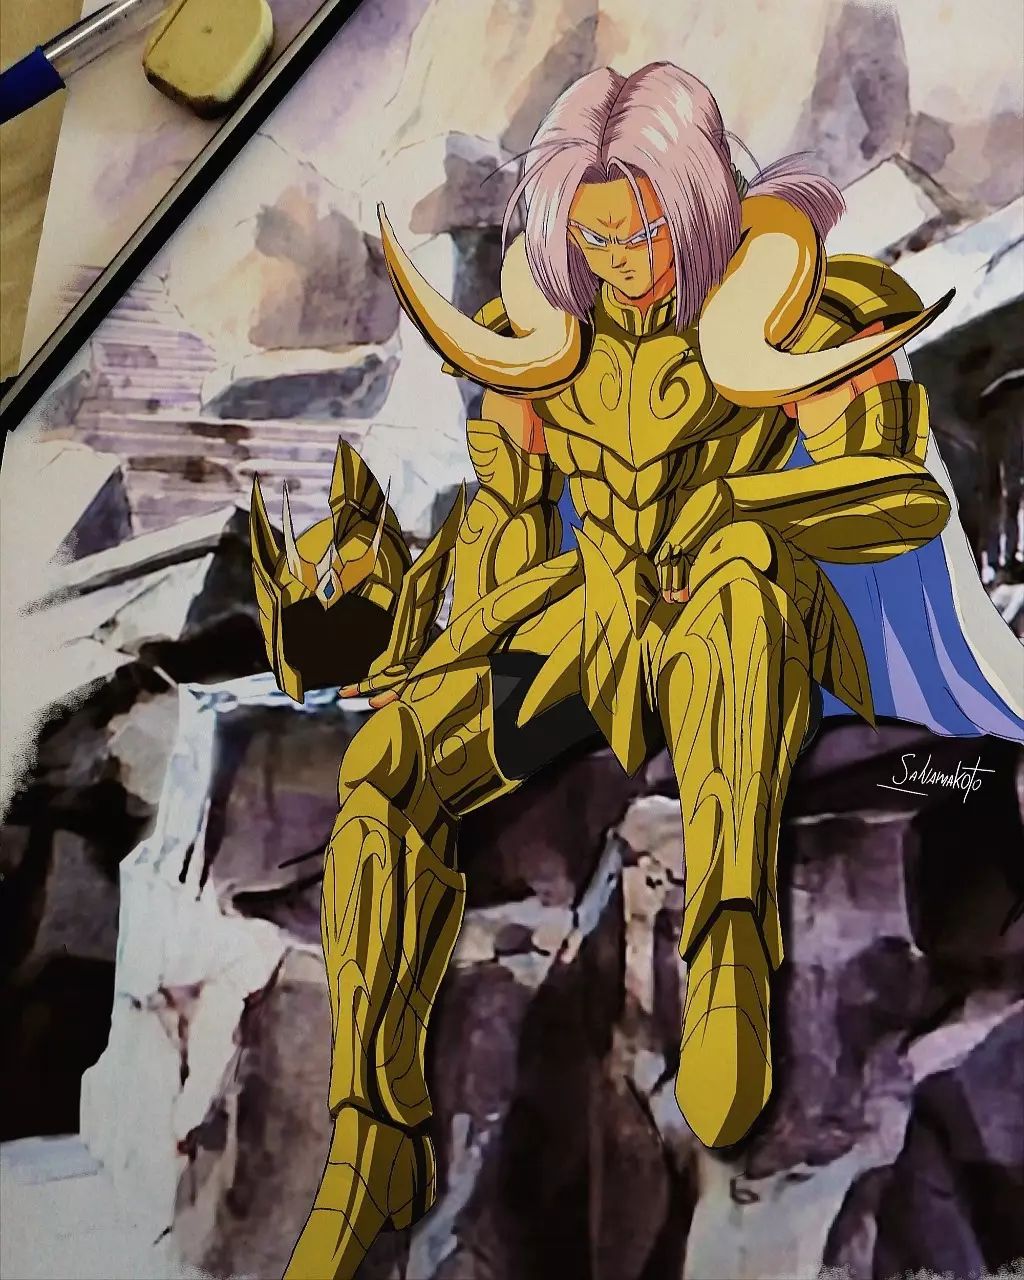 Artista imaginou os personagens de Dragon Ball como Cavaleiros de Ouro